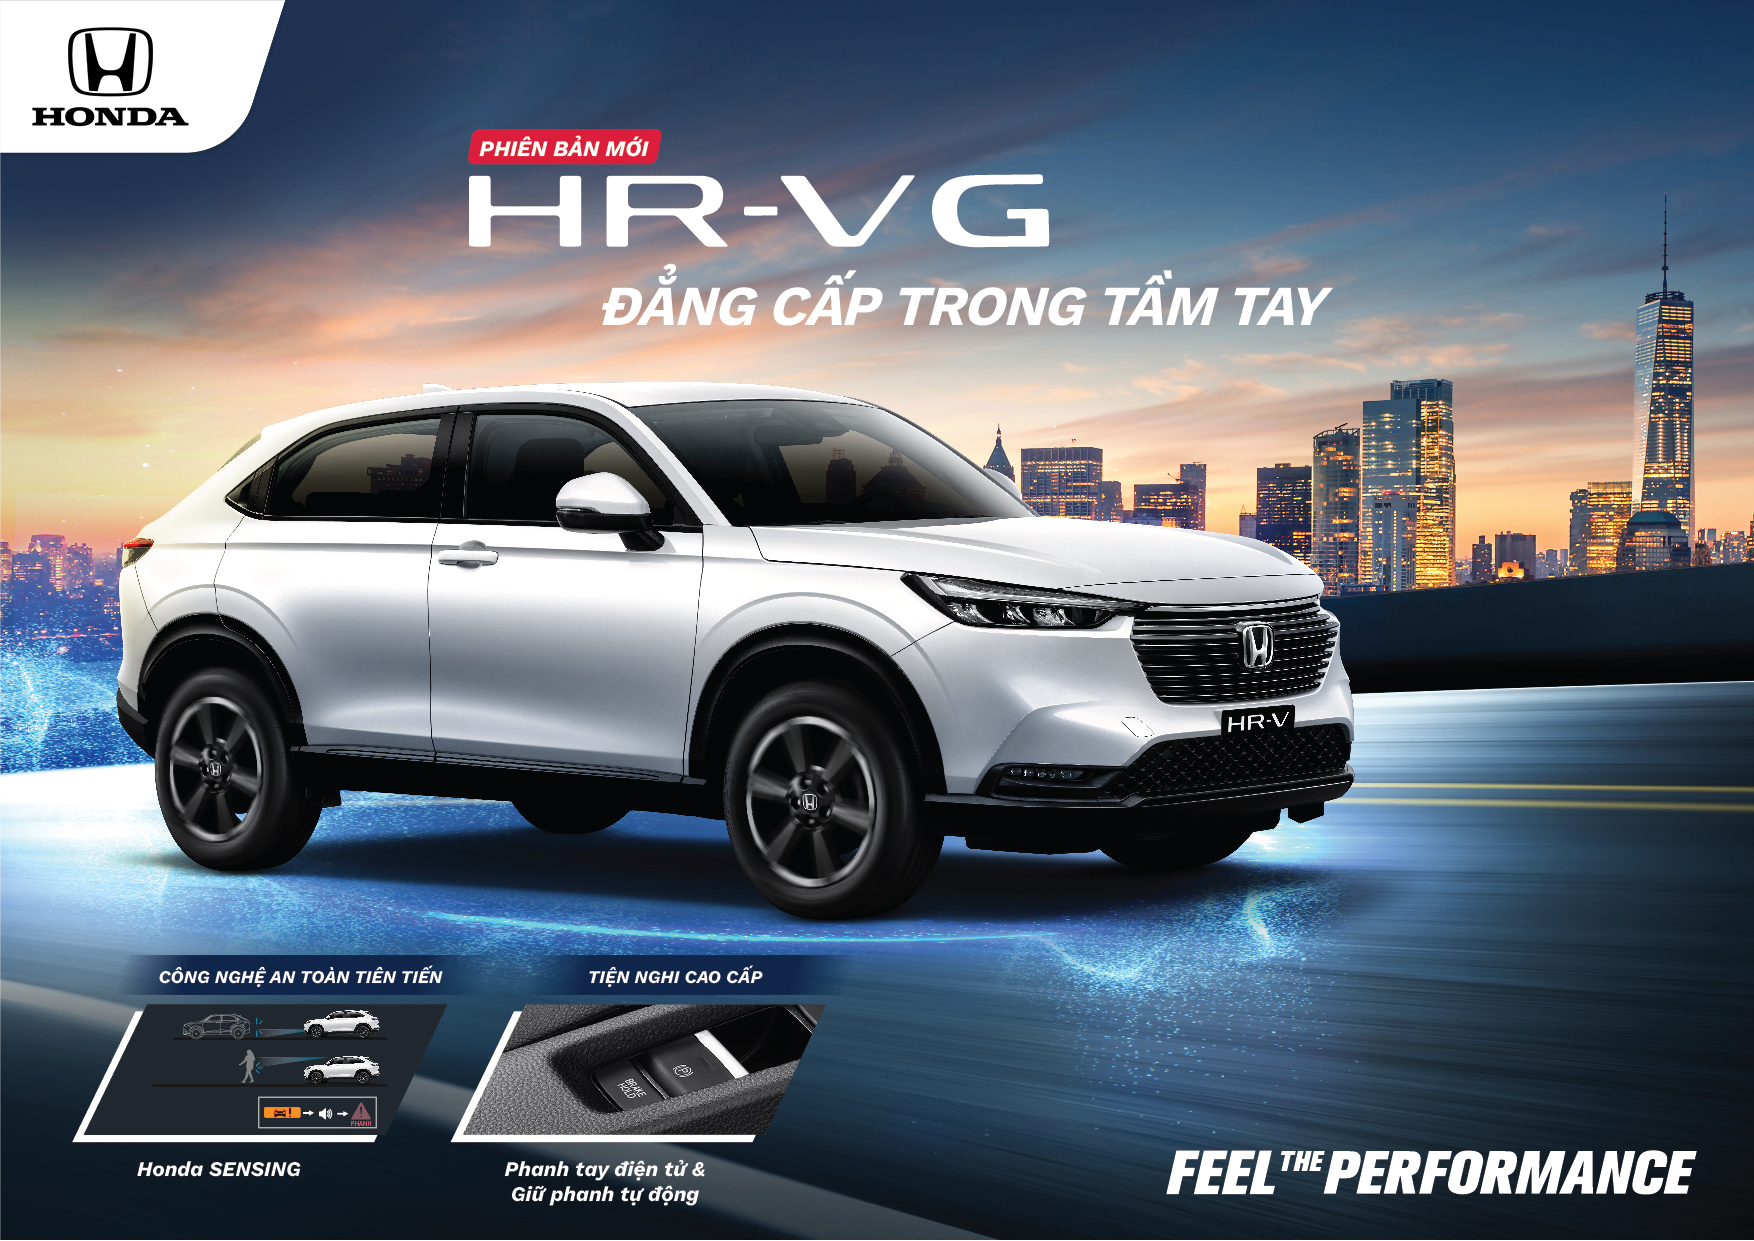 Phiên bản giá rẻ Honda HR-V G chính thức ra mắt, giá chỉ 699 triệu đồng | Honda Ô tô Nha Trang - Honda Ô tô Khánh Hòa | Hotline 0905 254 255